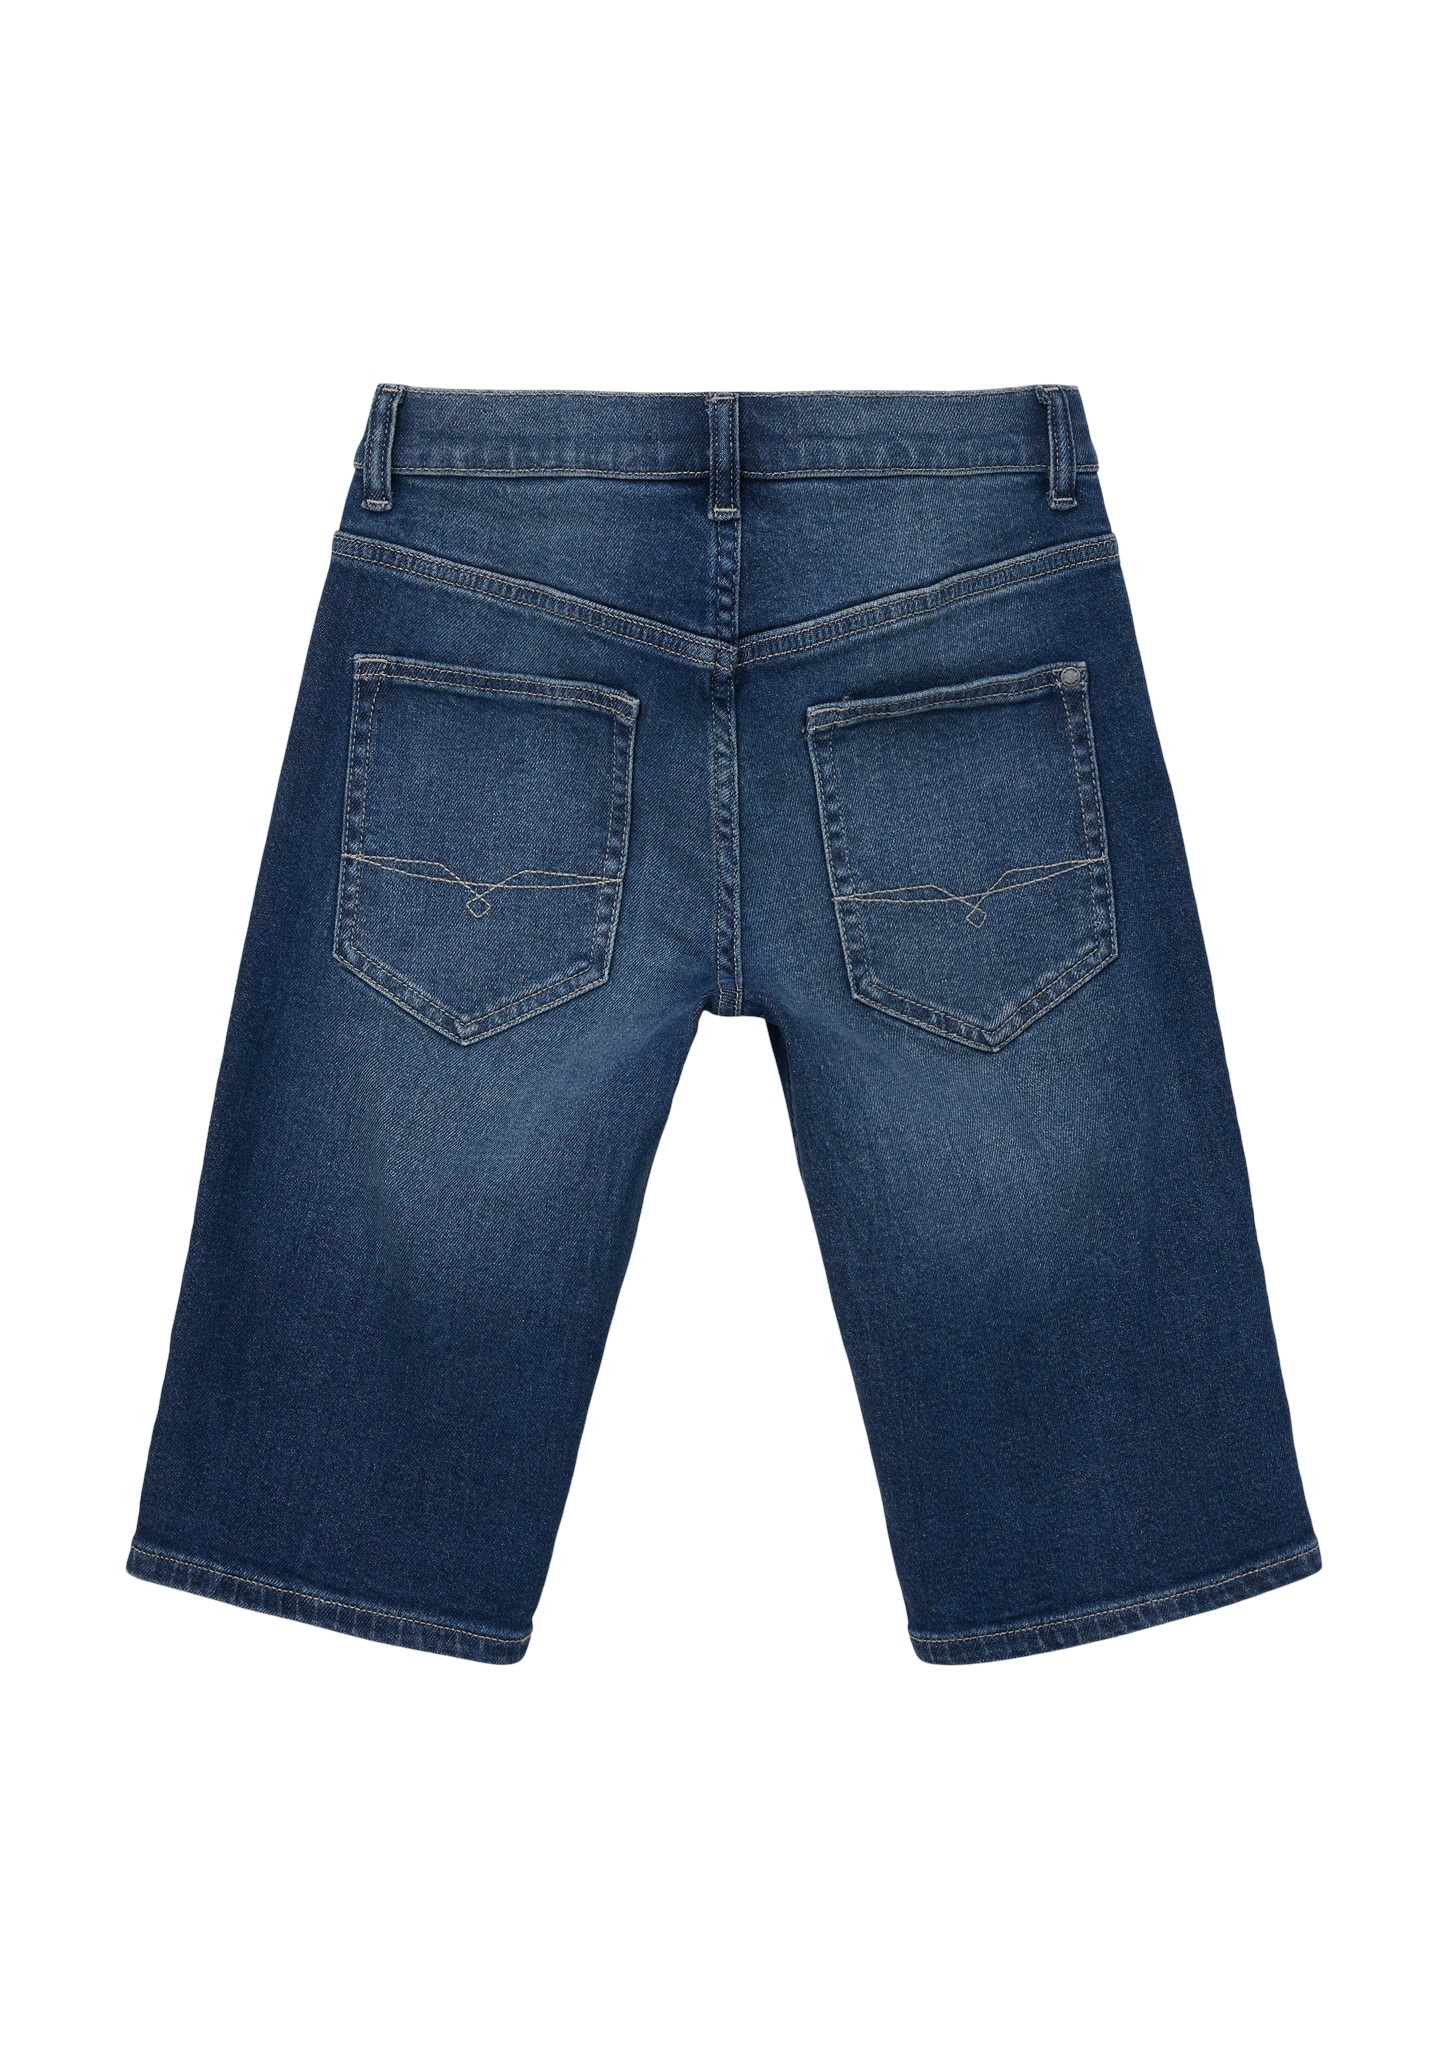 S.OLIVER Jeans Short 10745949